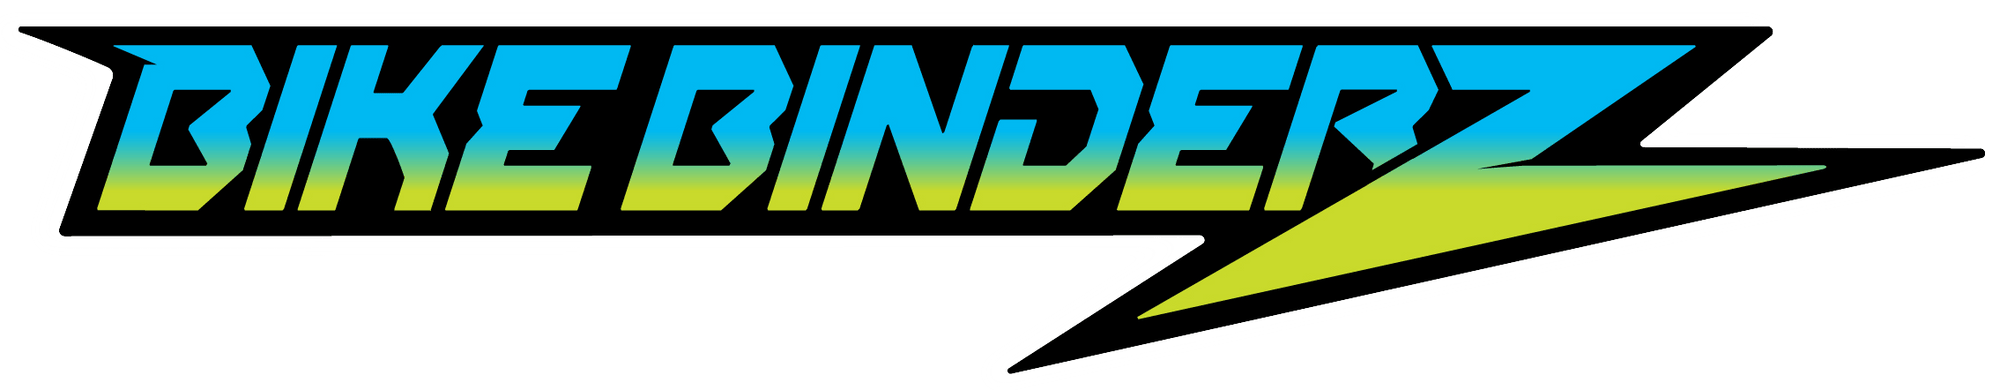 Bike Binderz Logo